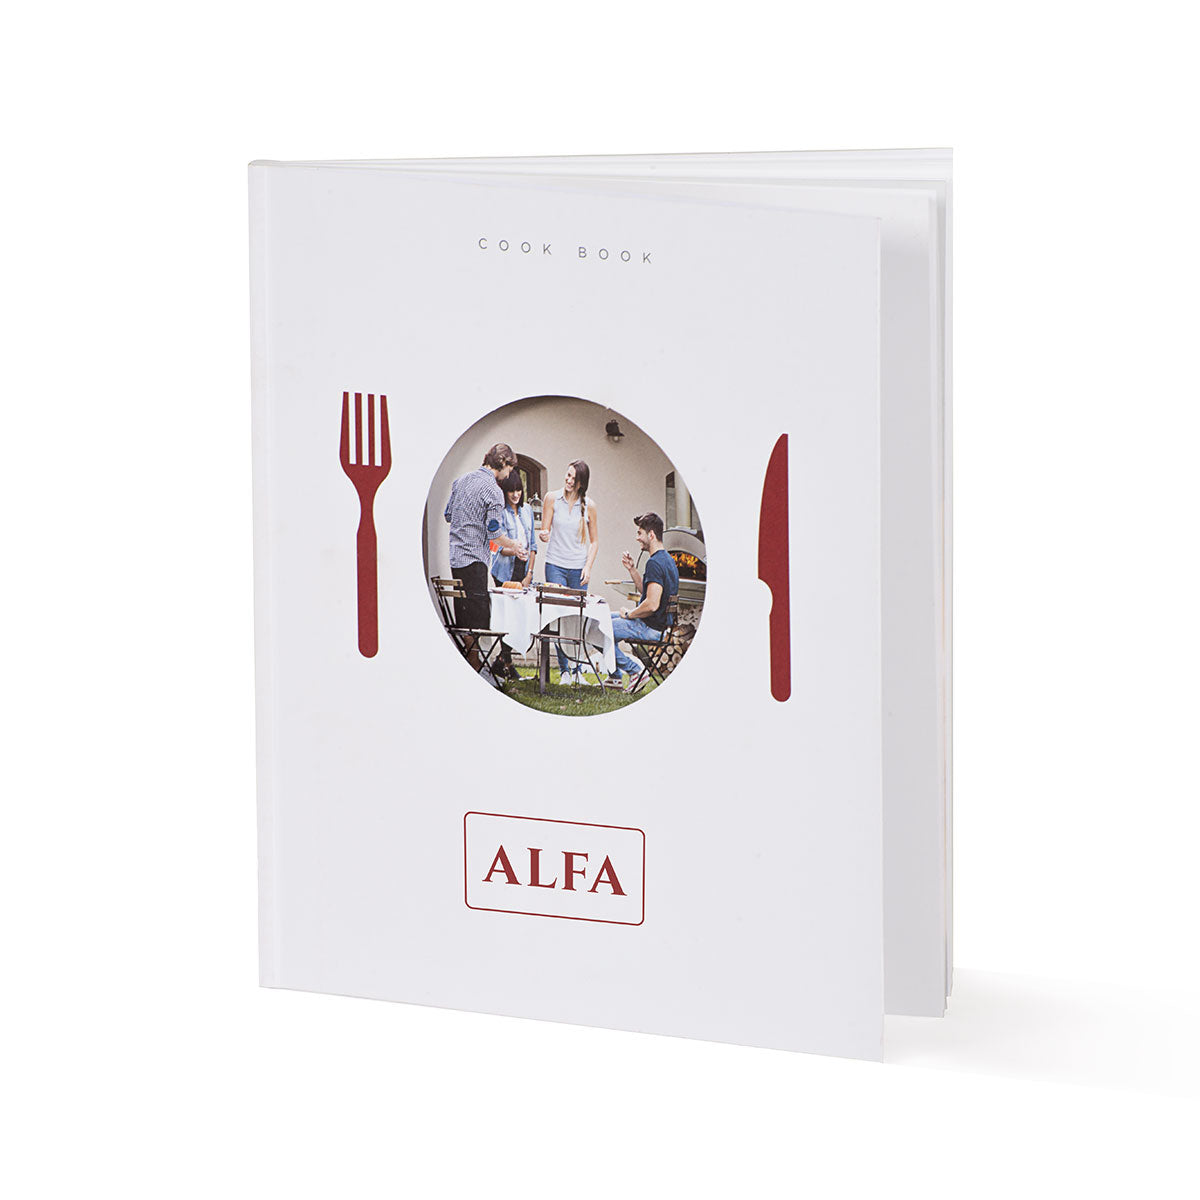 Alfa kookboek